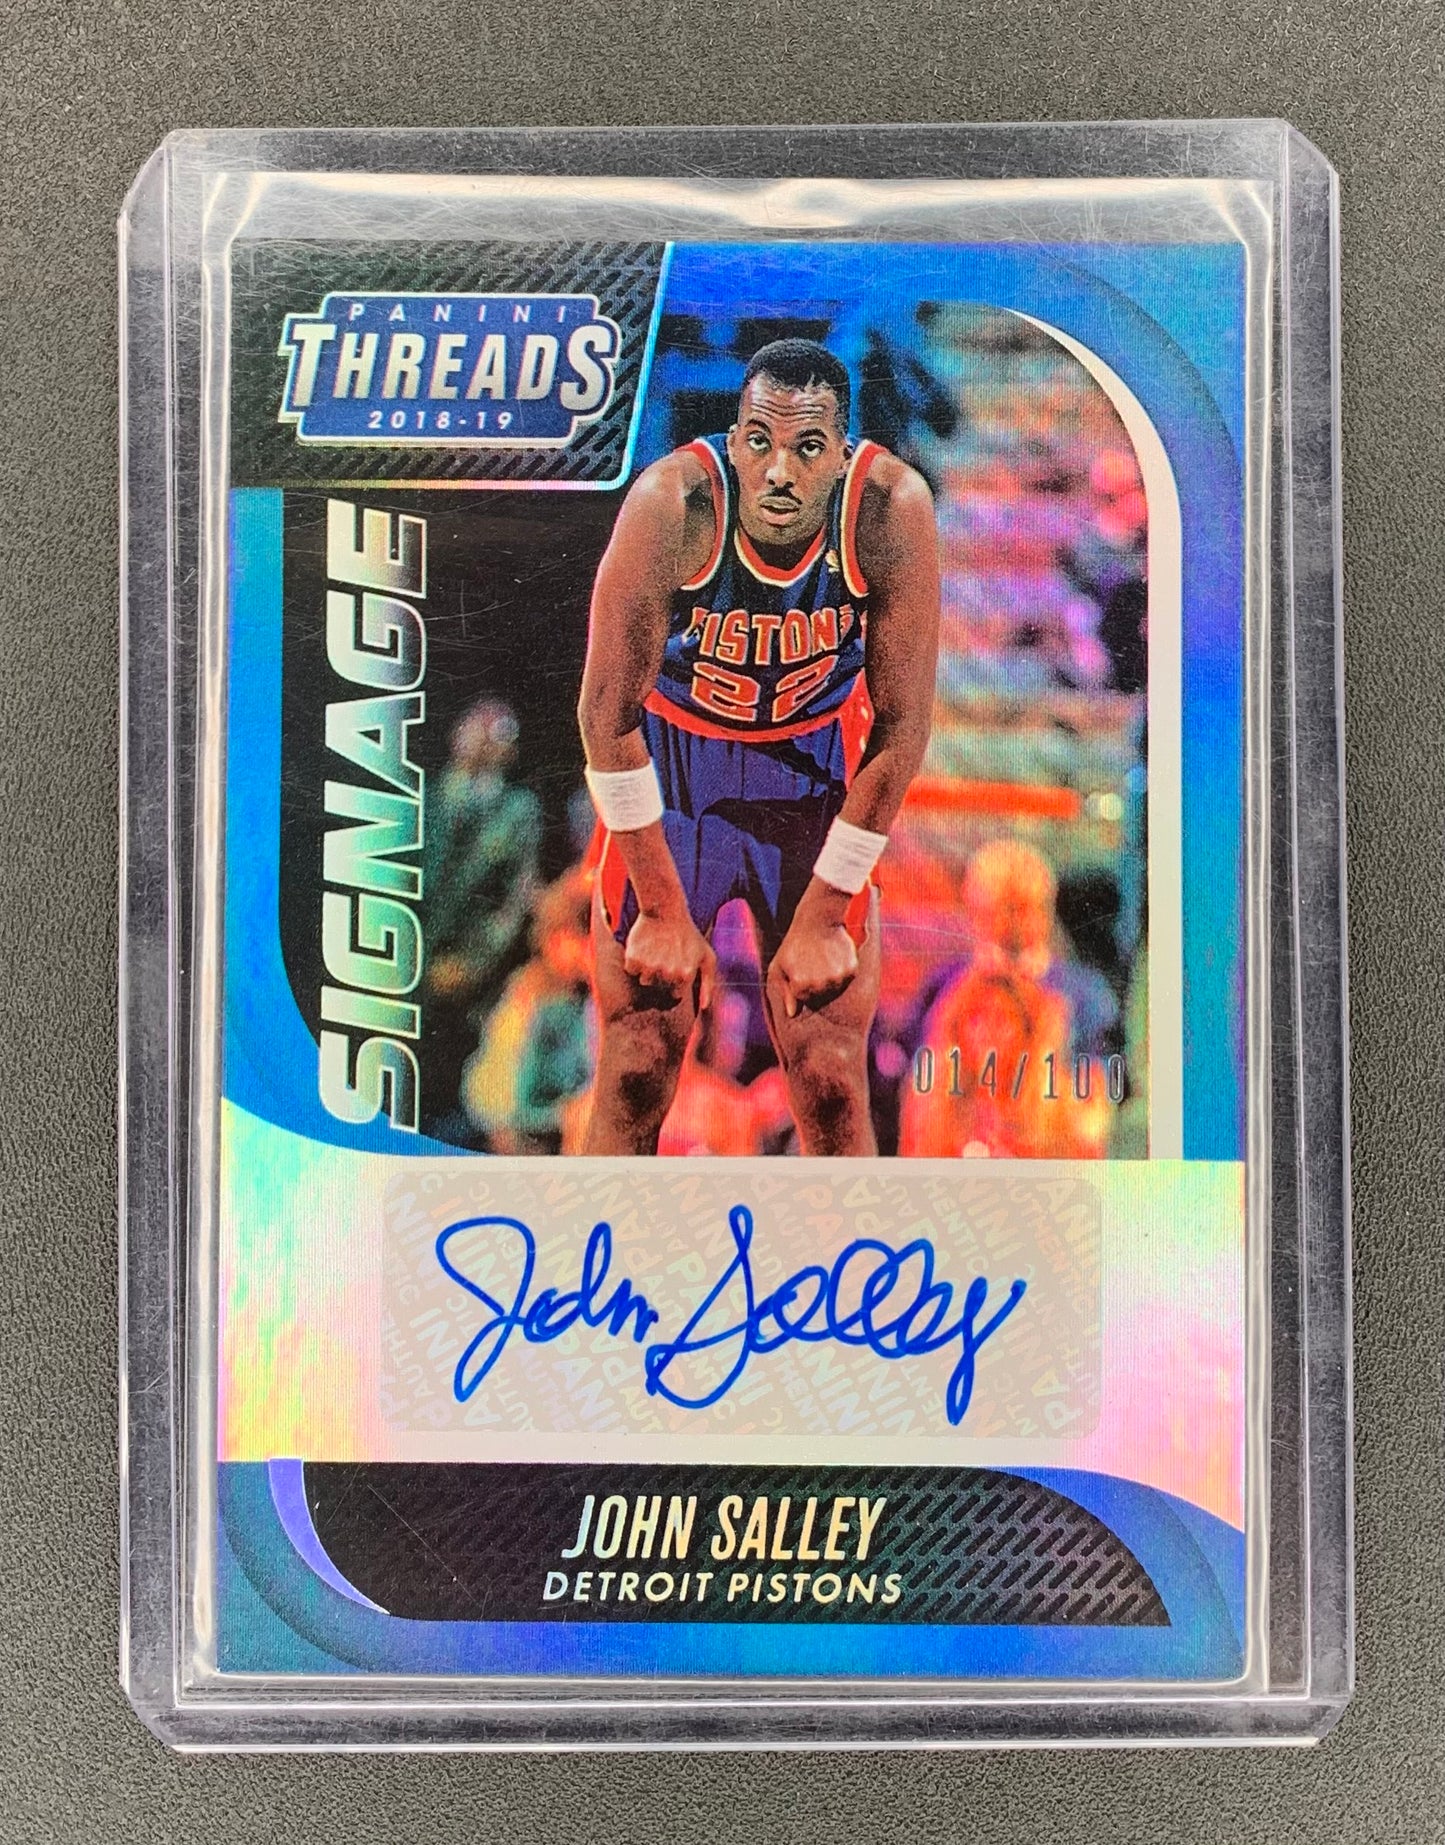 2018/19 Panini Threads #48 John Salley, Detroit Pistons Signage 014/100